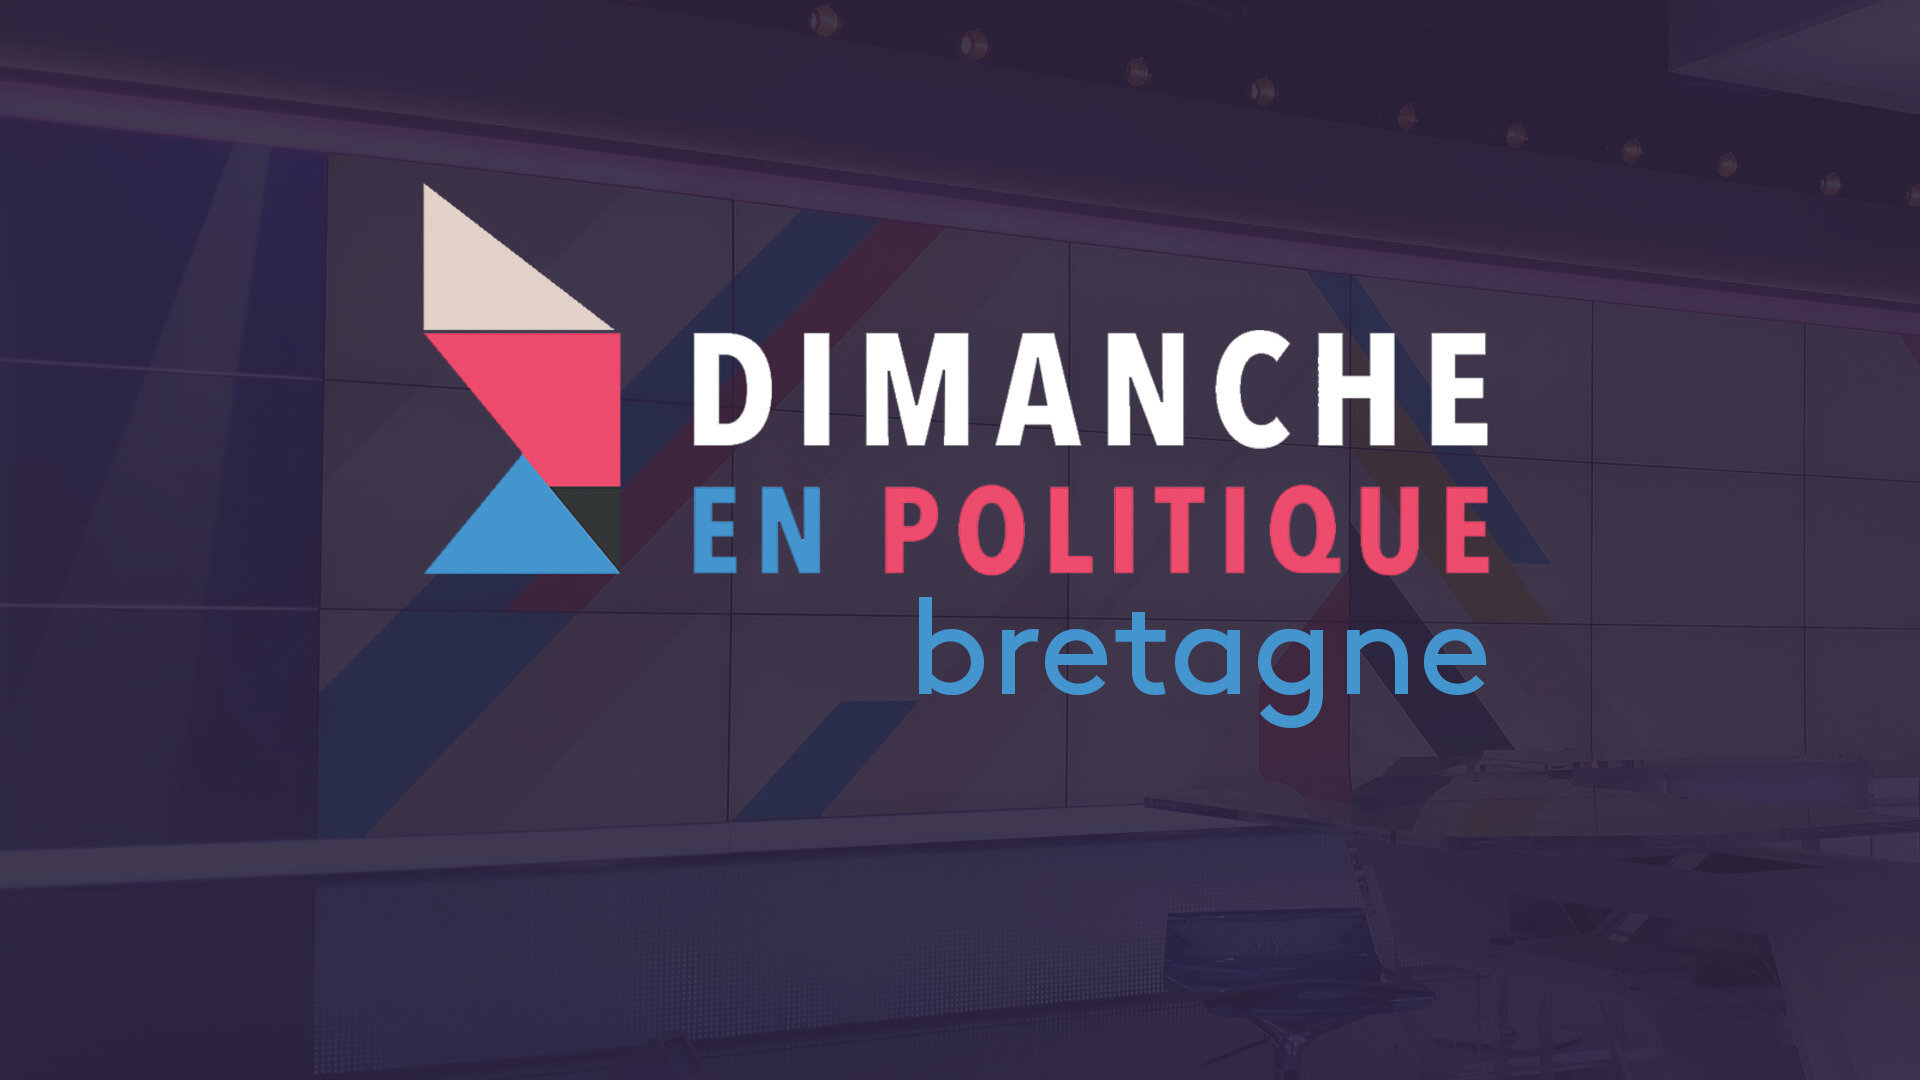 Dimanche en politique à Nathalie Appéré, maire de Rennes